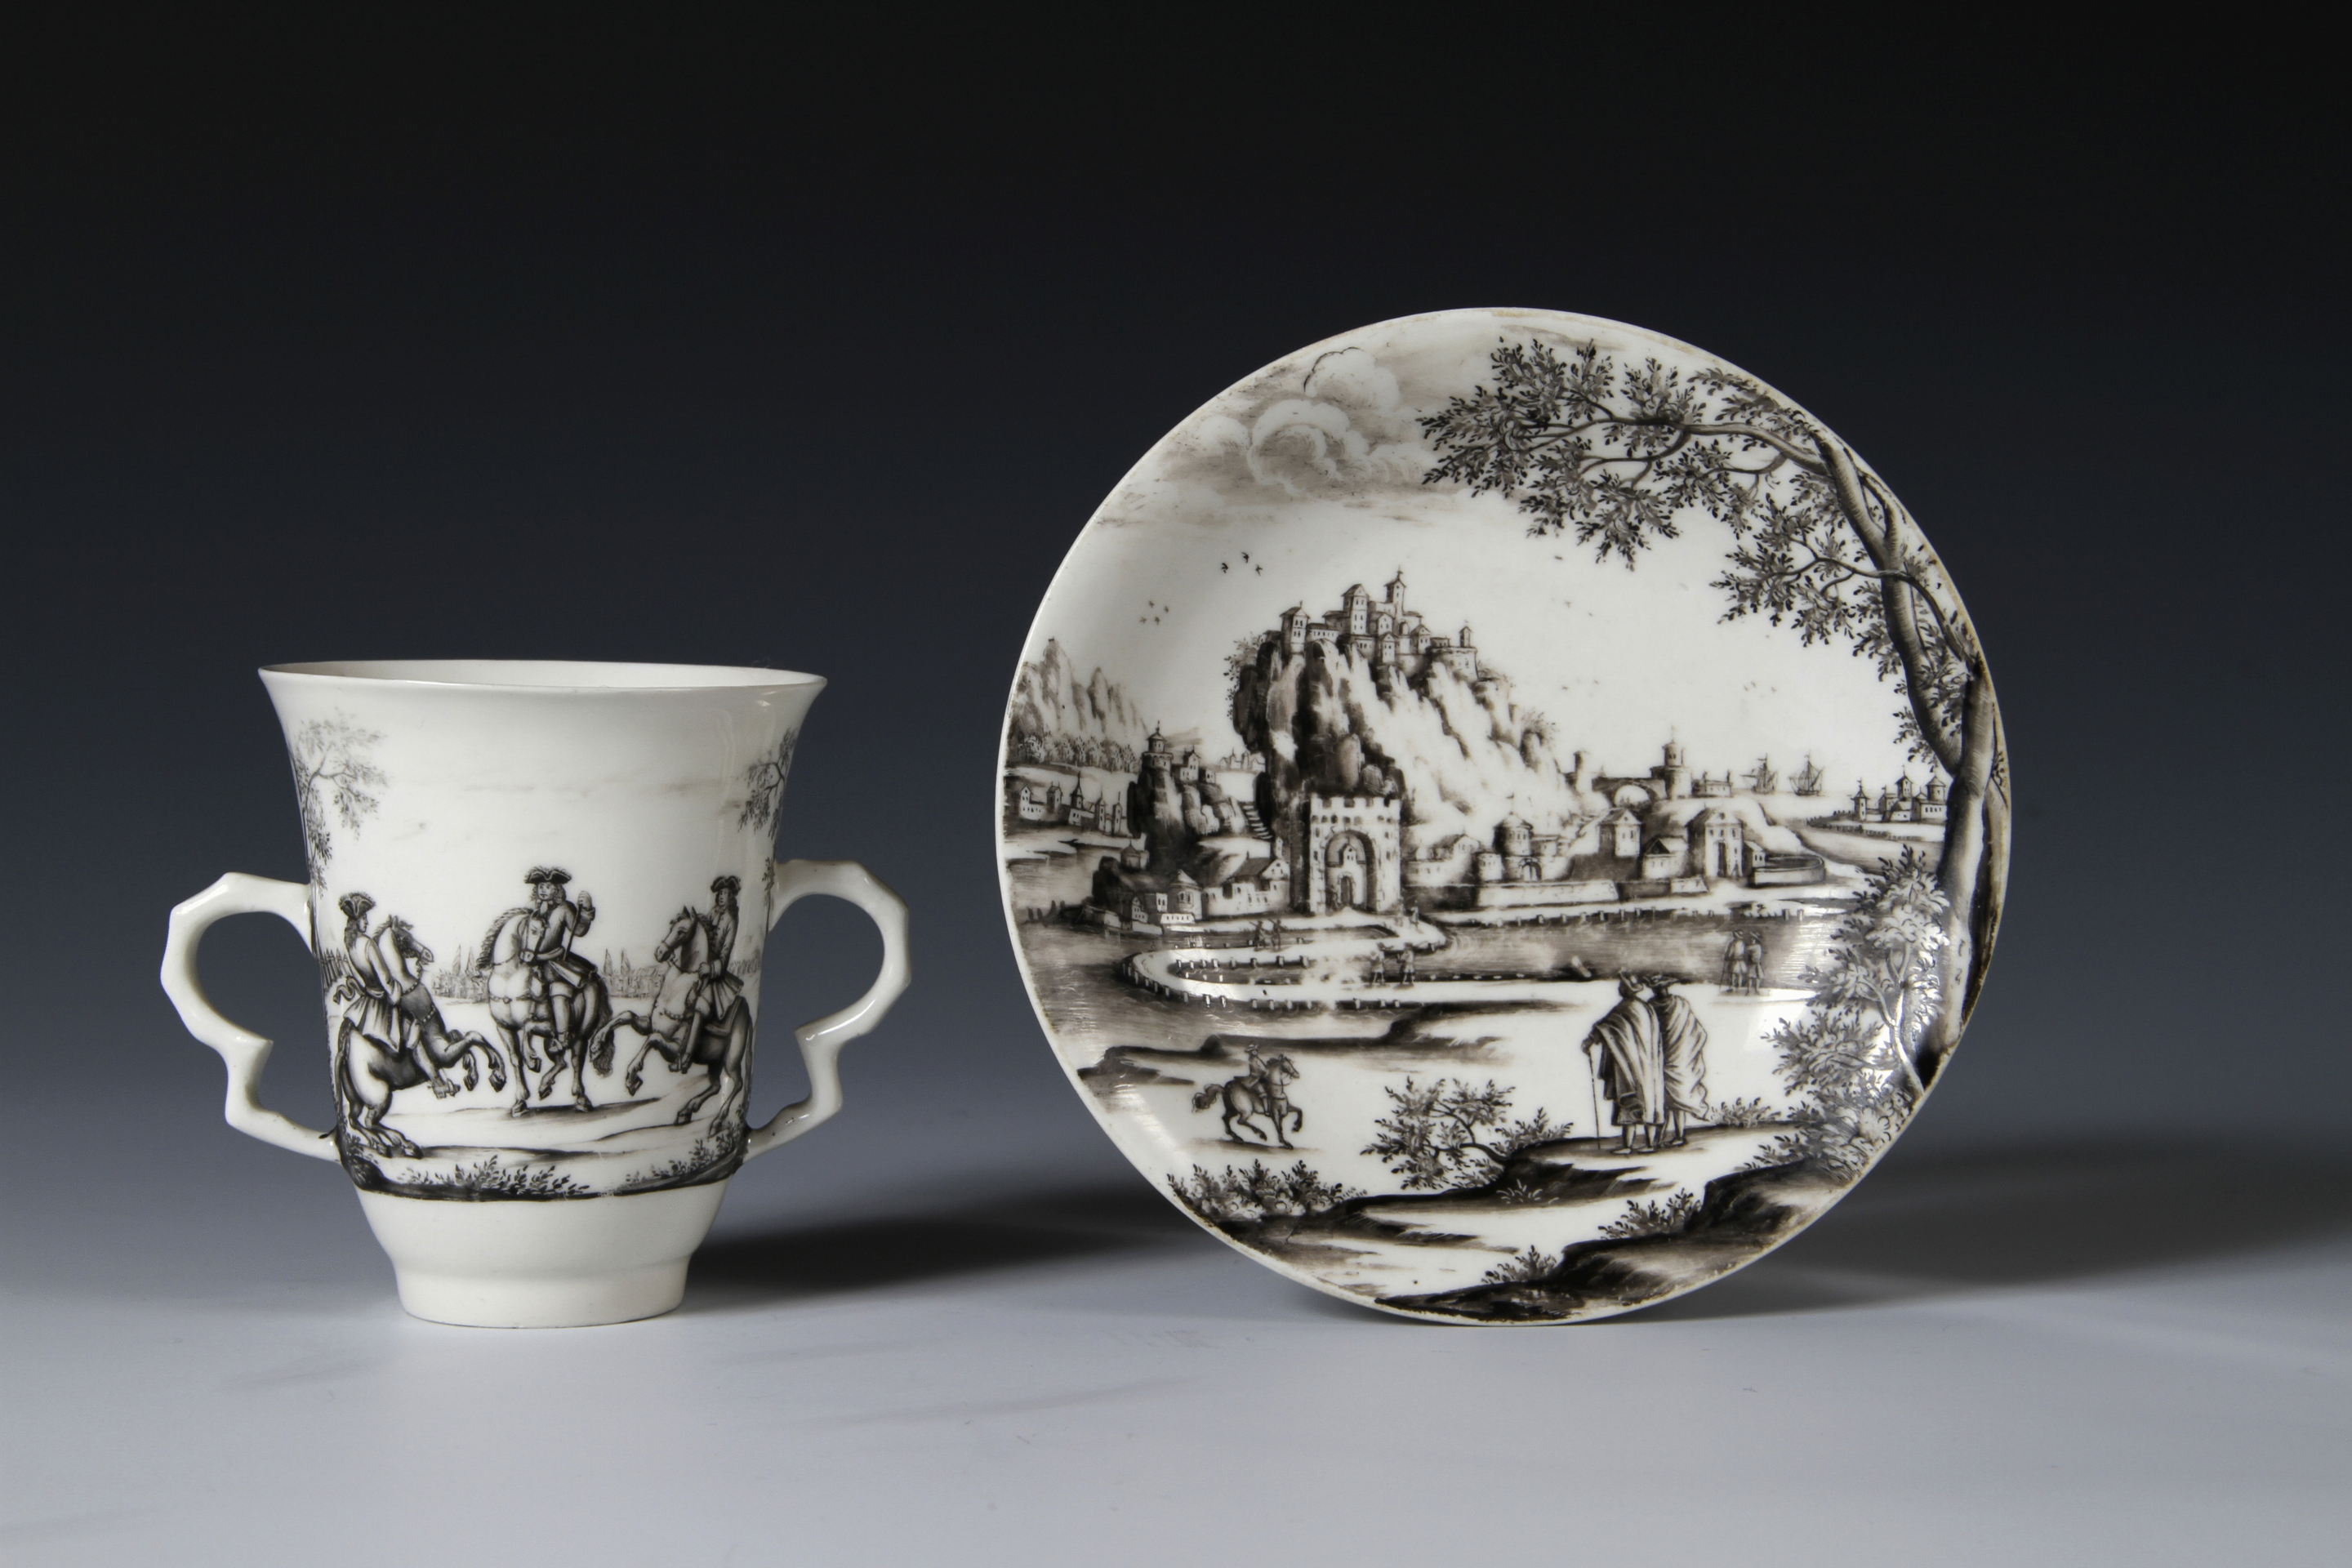 A Meissen Böttger porcelain two-handled beaker and saucer painted by Ignaz Preissler